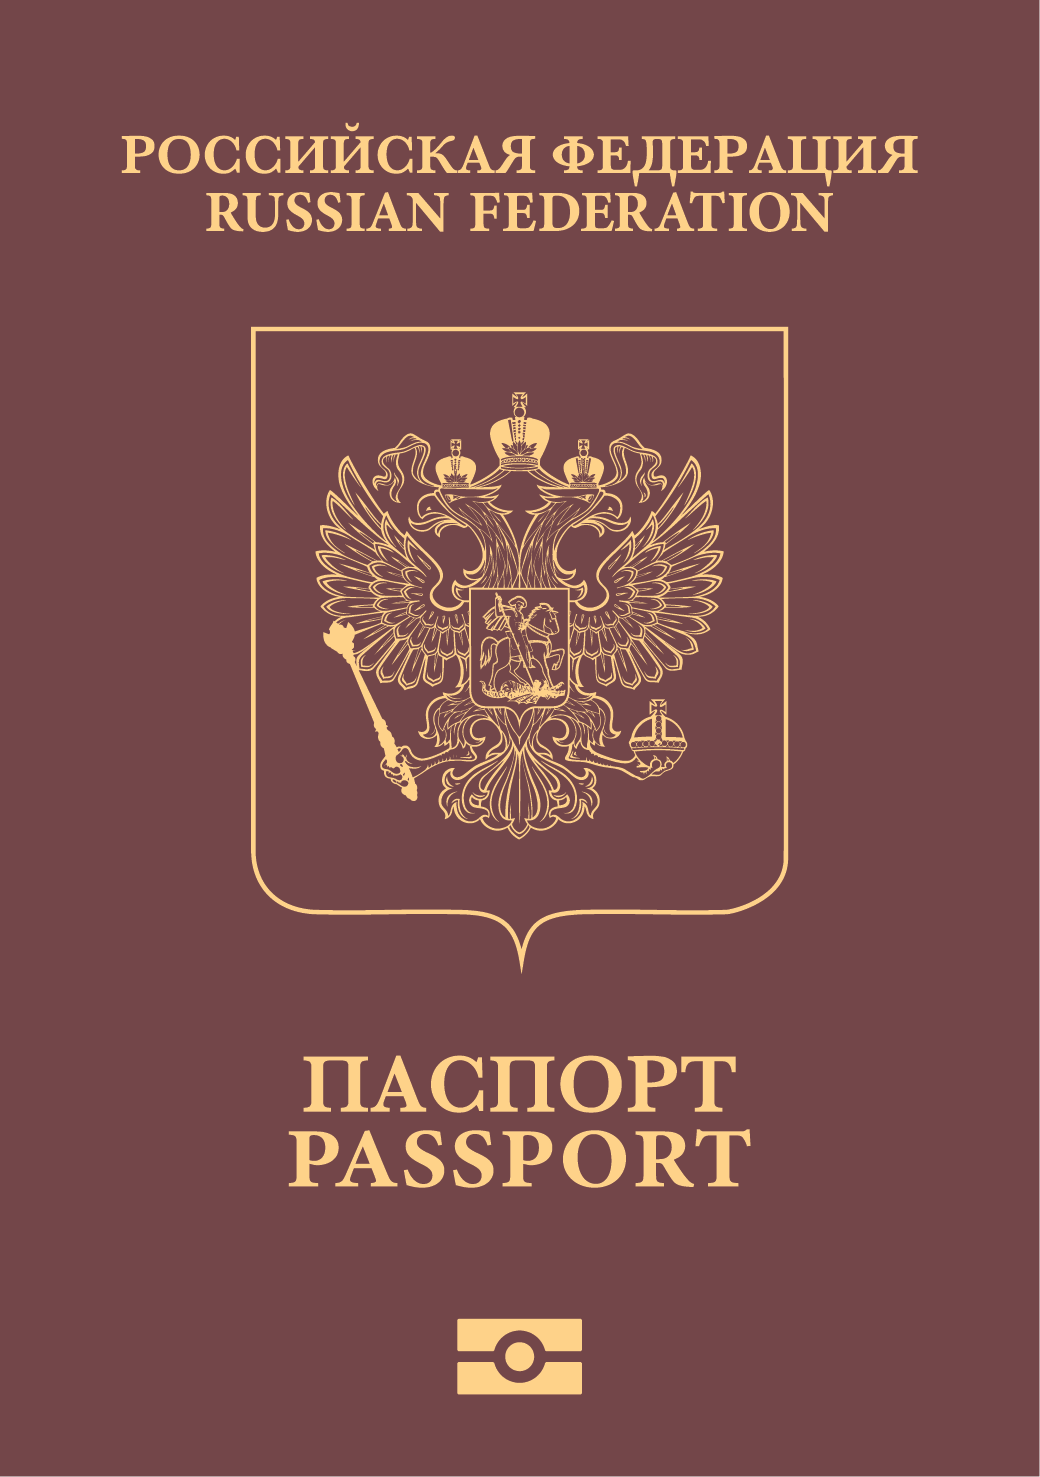 Paspor Rusia